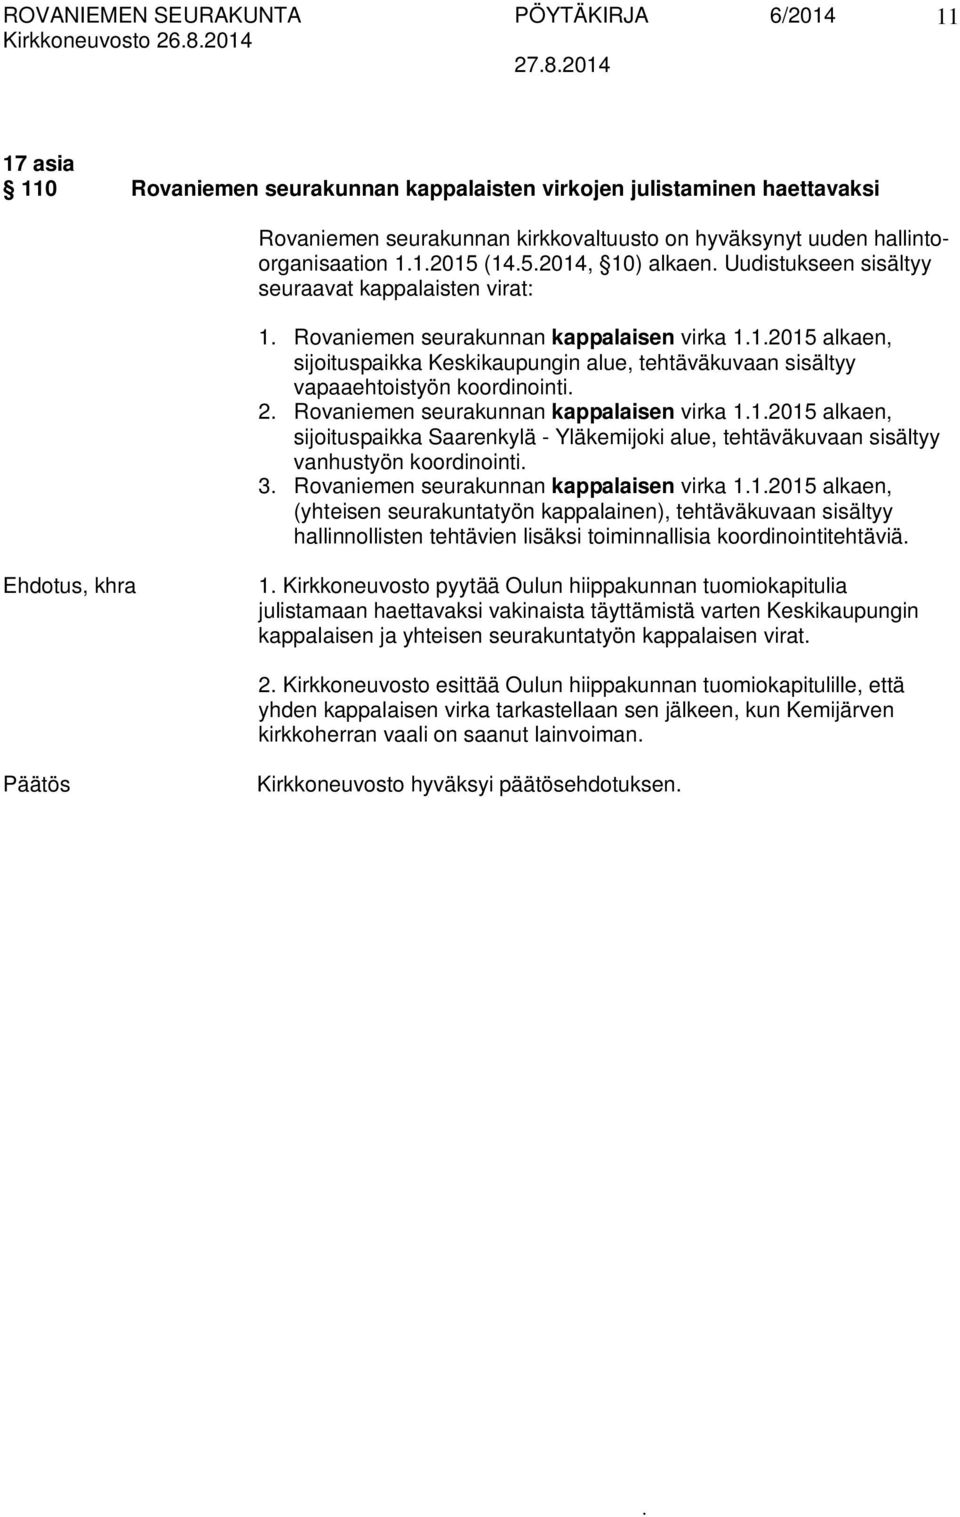 vapaaehtoistyön koordinointi 2 Rovaniemen seurakunnan kappalaisen virka 112015 alkaen, sijoituspaikka Saarenkylä - Yläkemijoki alue, tehtäväkuvaan sisältyy vanhustyön koordinointi 3 Rovaniemen